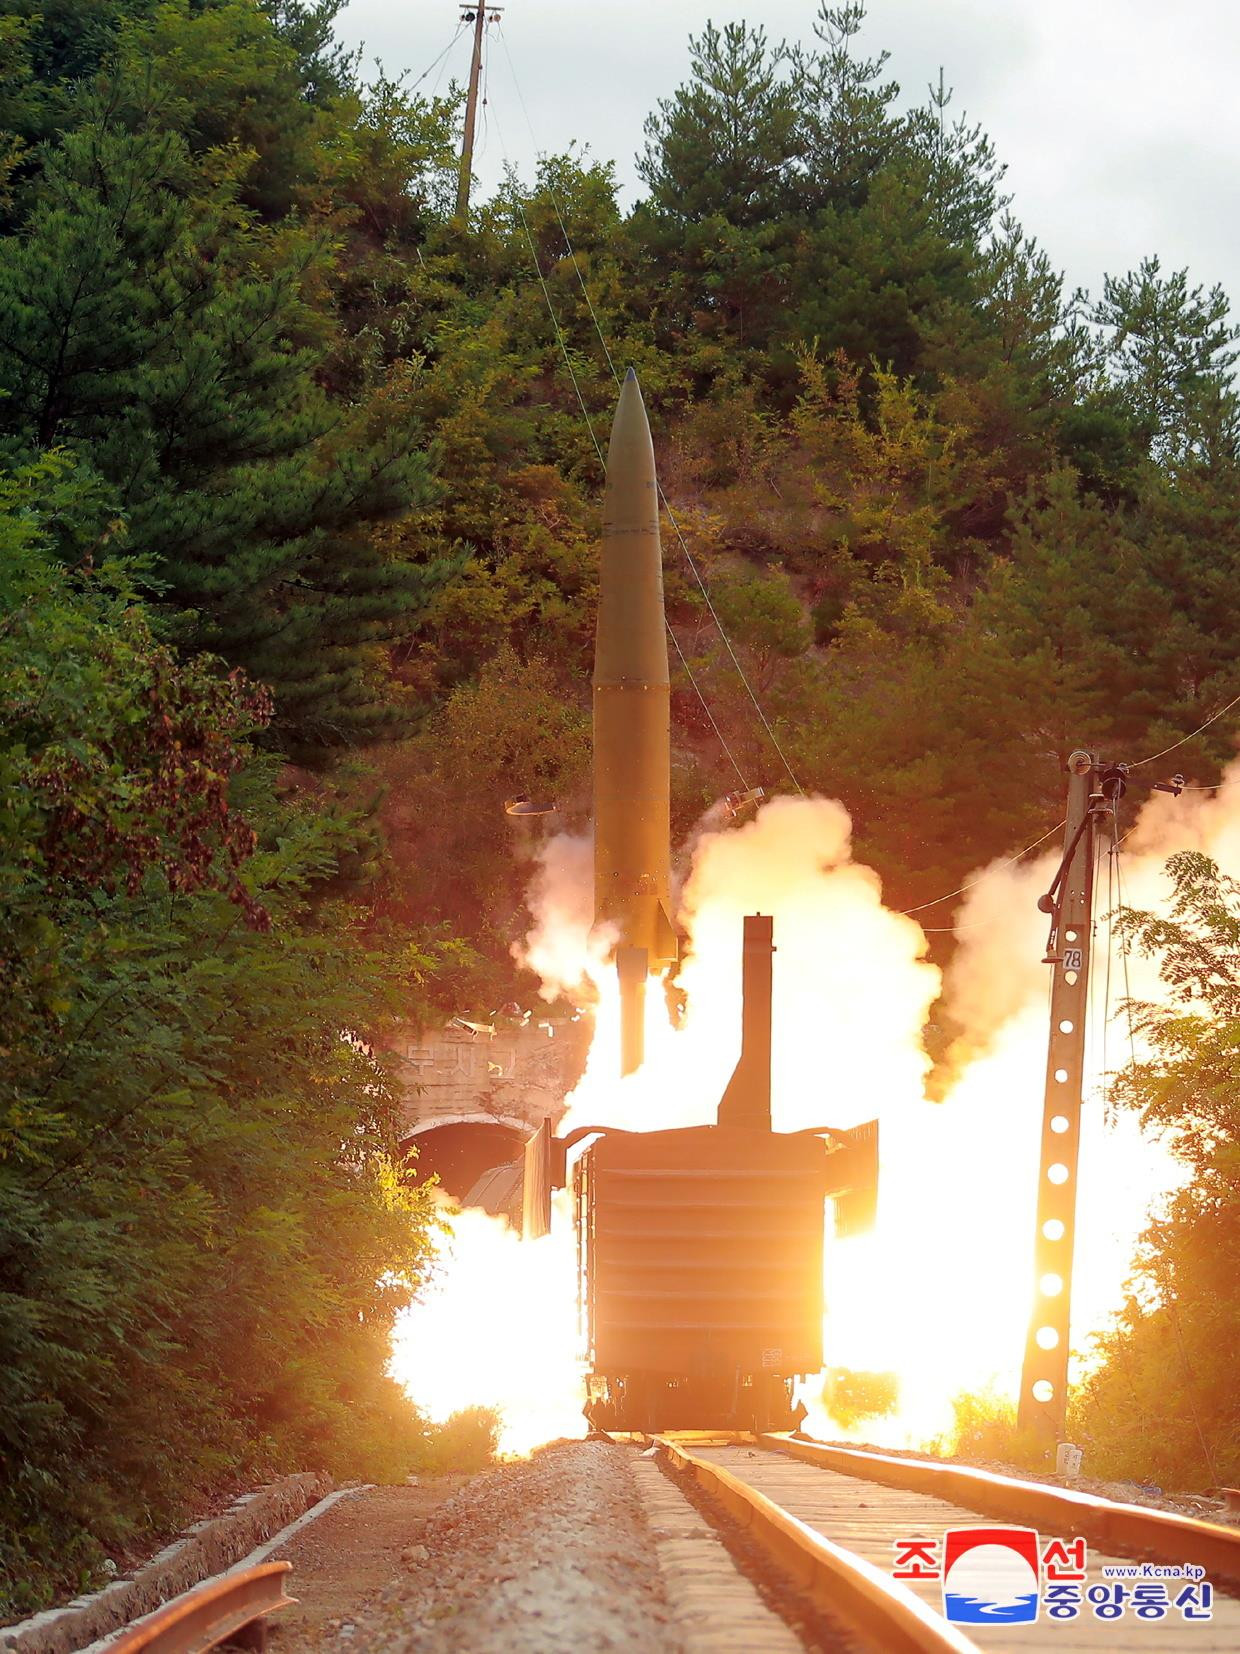 Triều Tiên thử nghiệm tên lửa mới gây chấn động, siêu vũ khí chỉ có ở Nga - 3